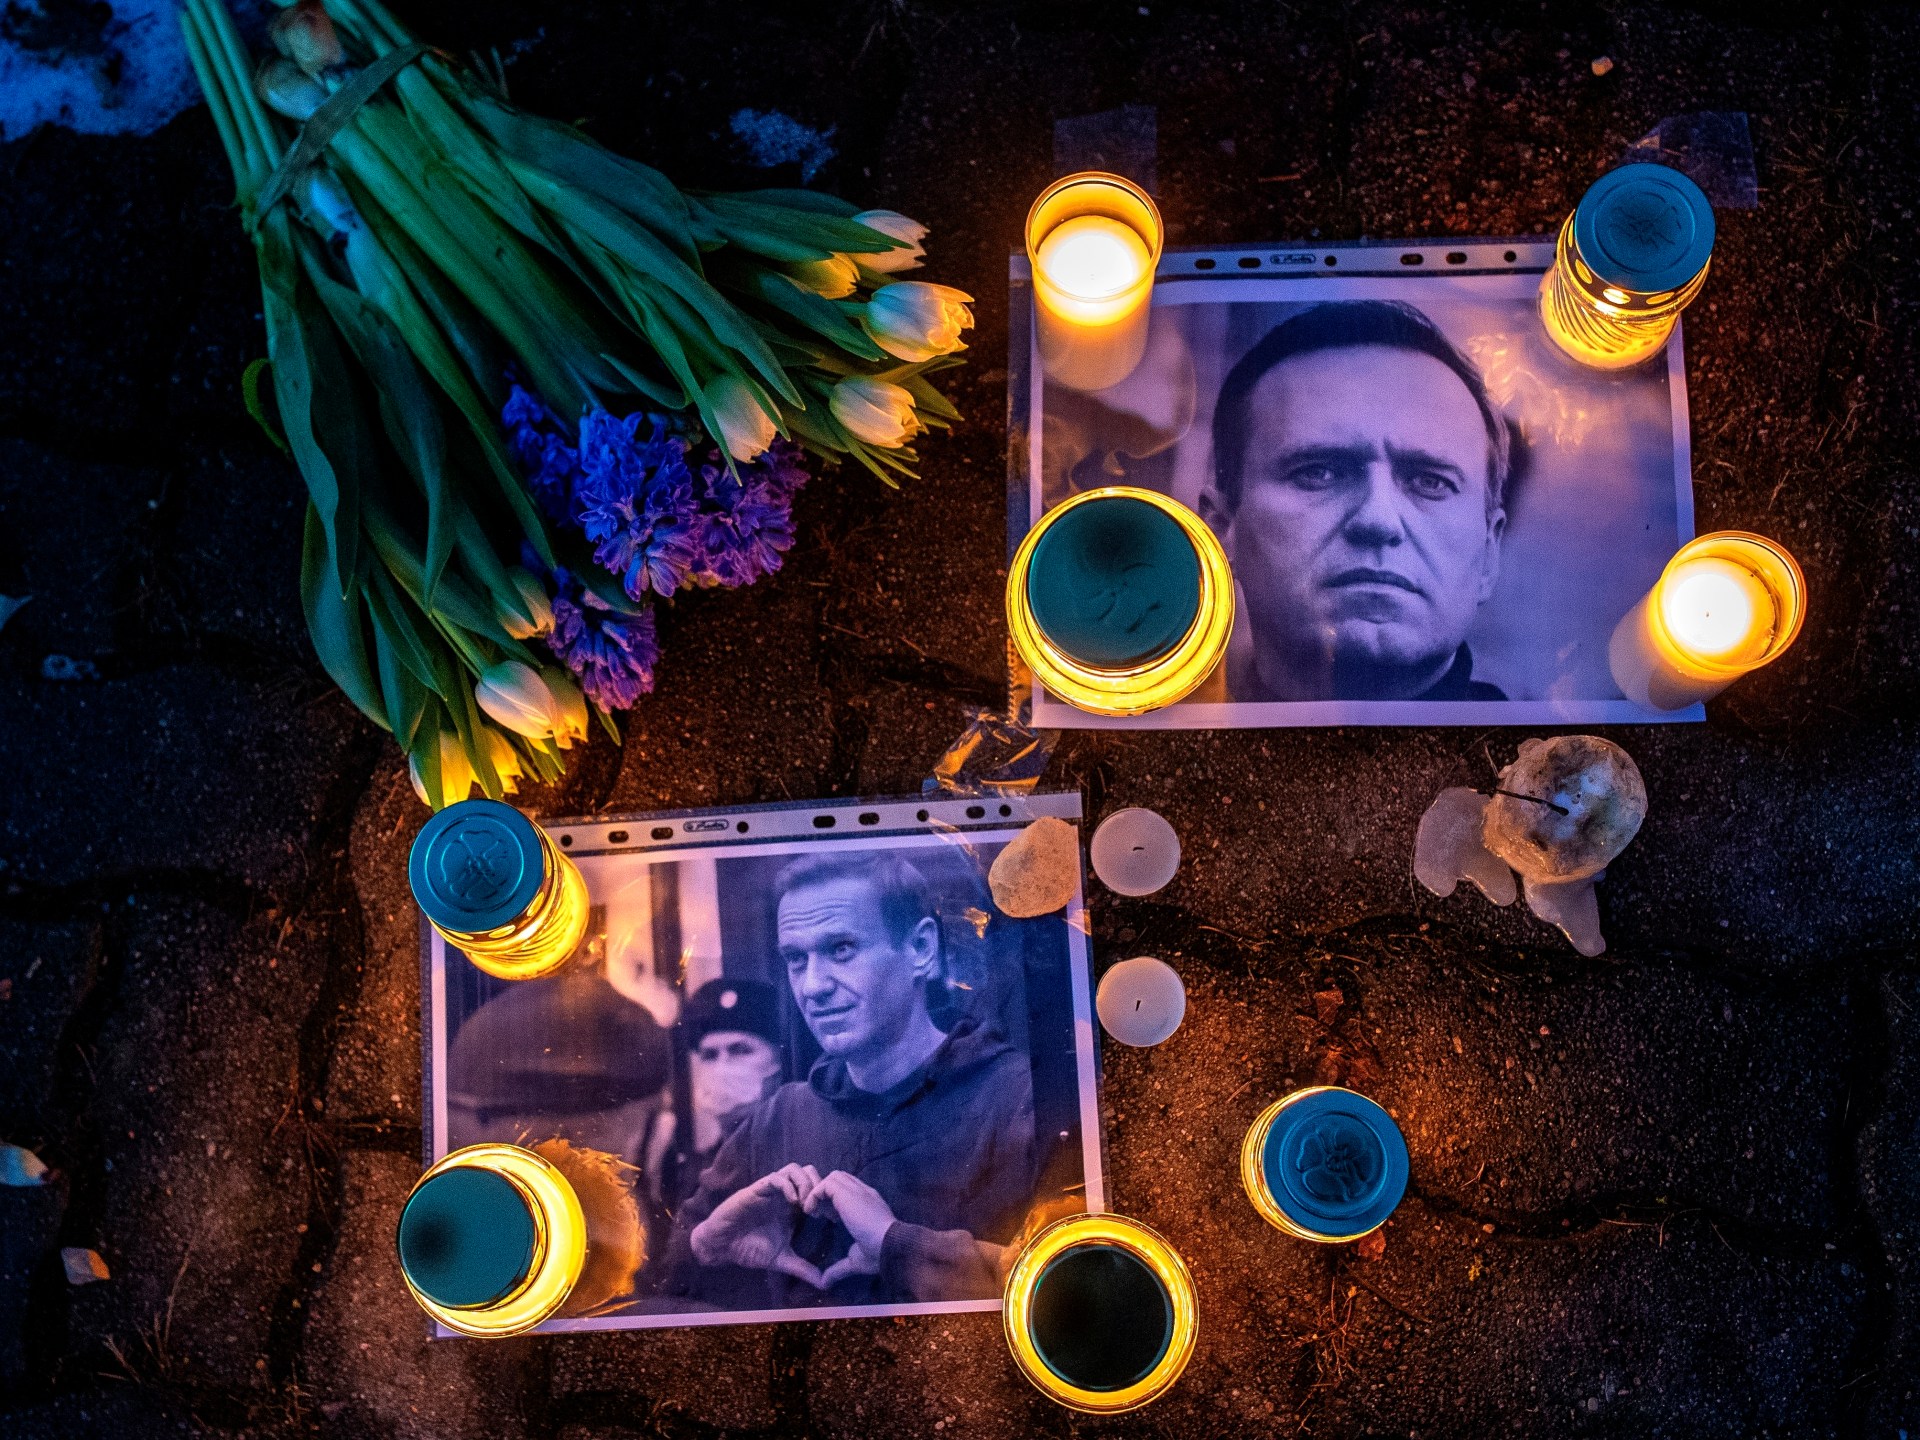 ‘They killed him’: Was Putin’s critic Navalny murdered? | Vladimir Putin News